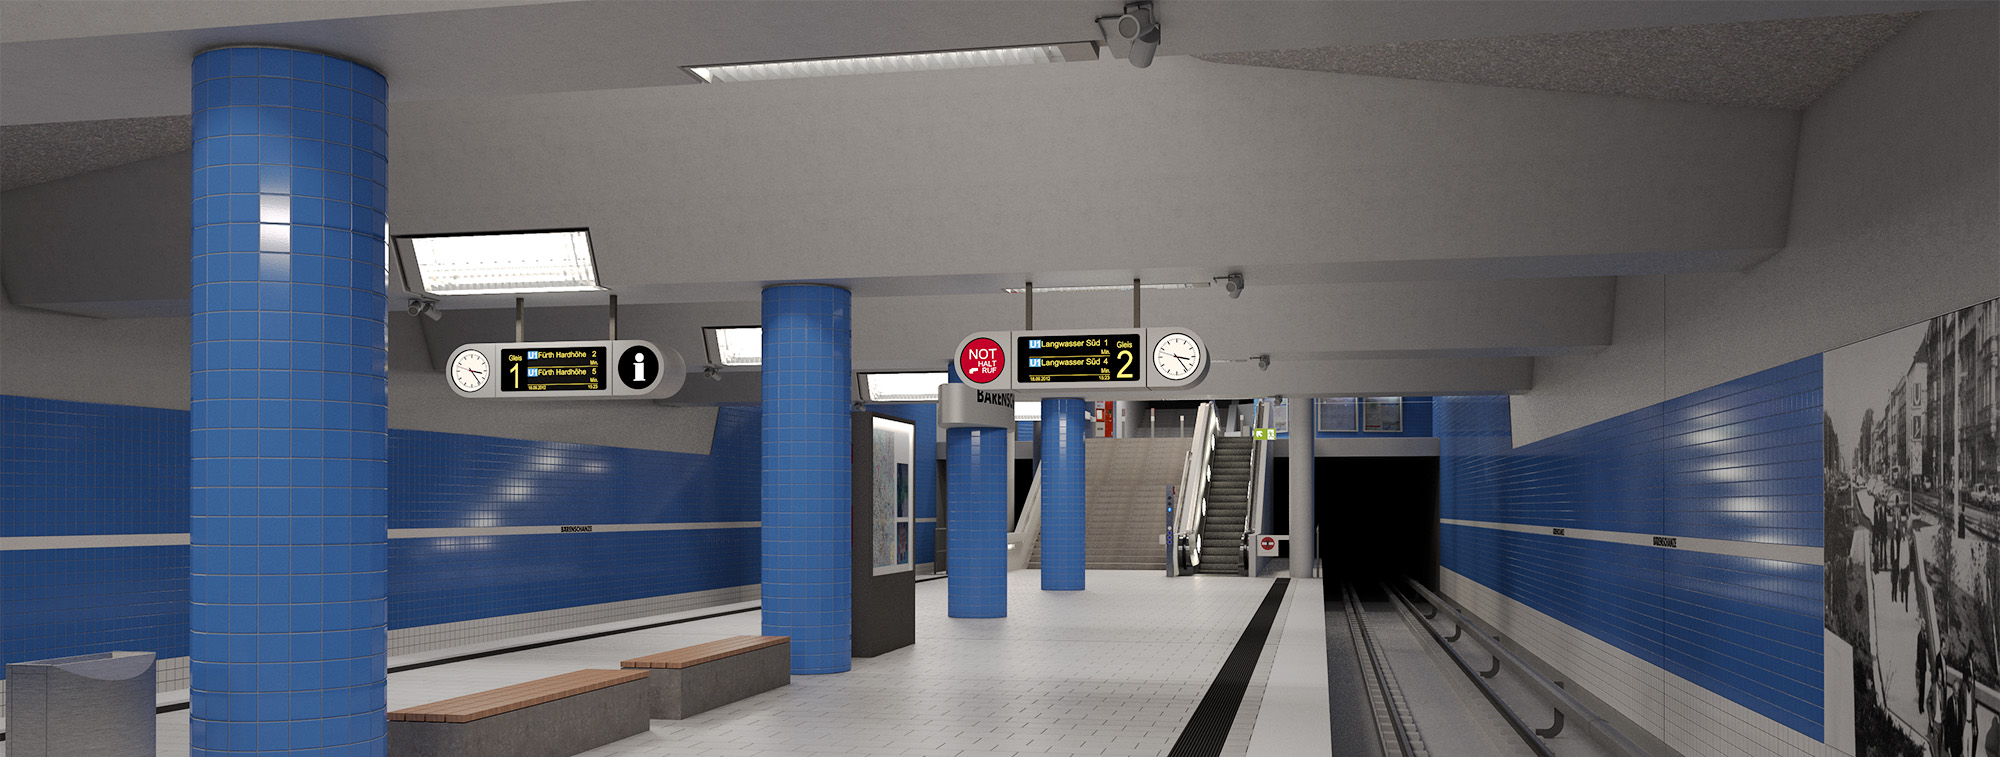 Eine der Ideen für die Neugestaltung des Bahnsteigs am U-Bahnhof Bärenschanze (Visualisierung)